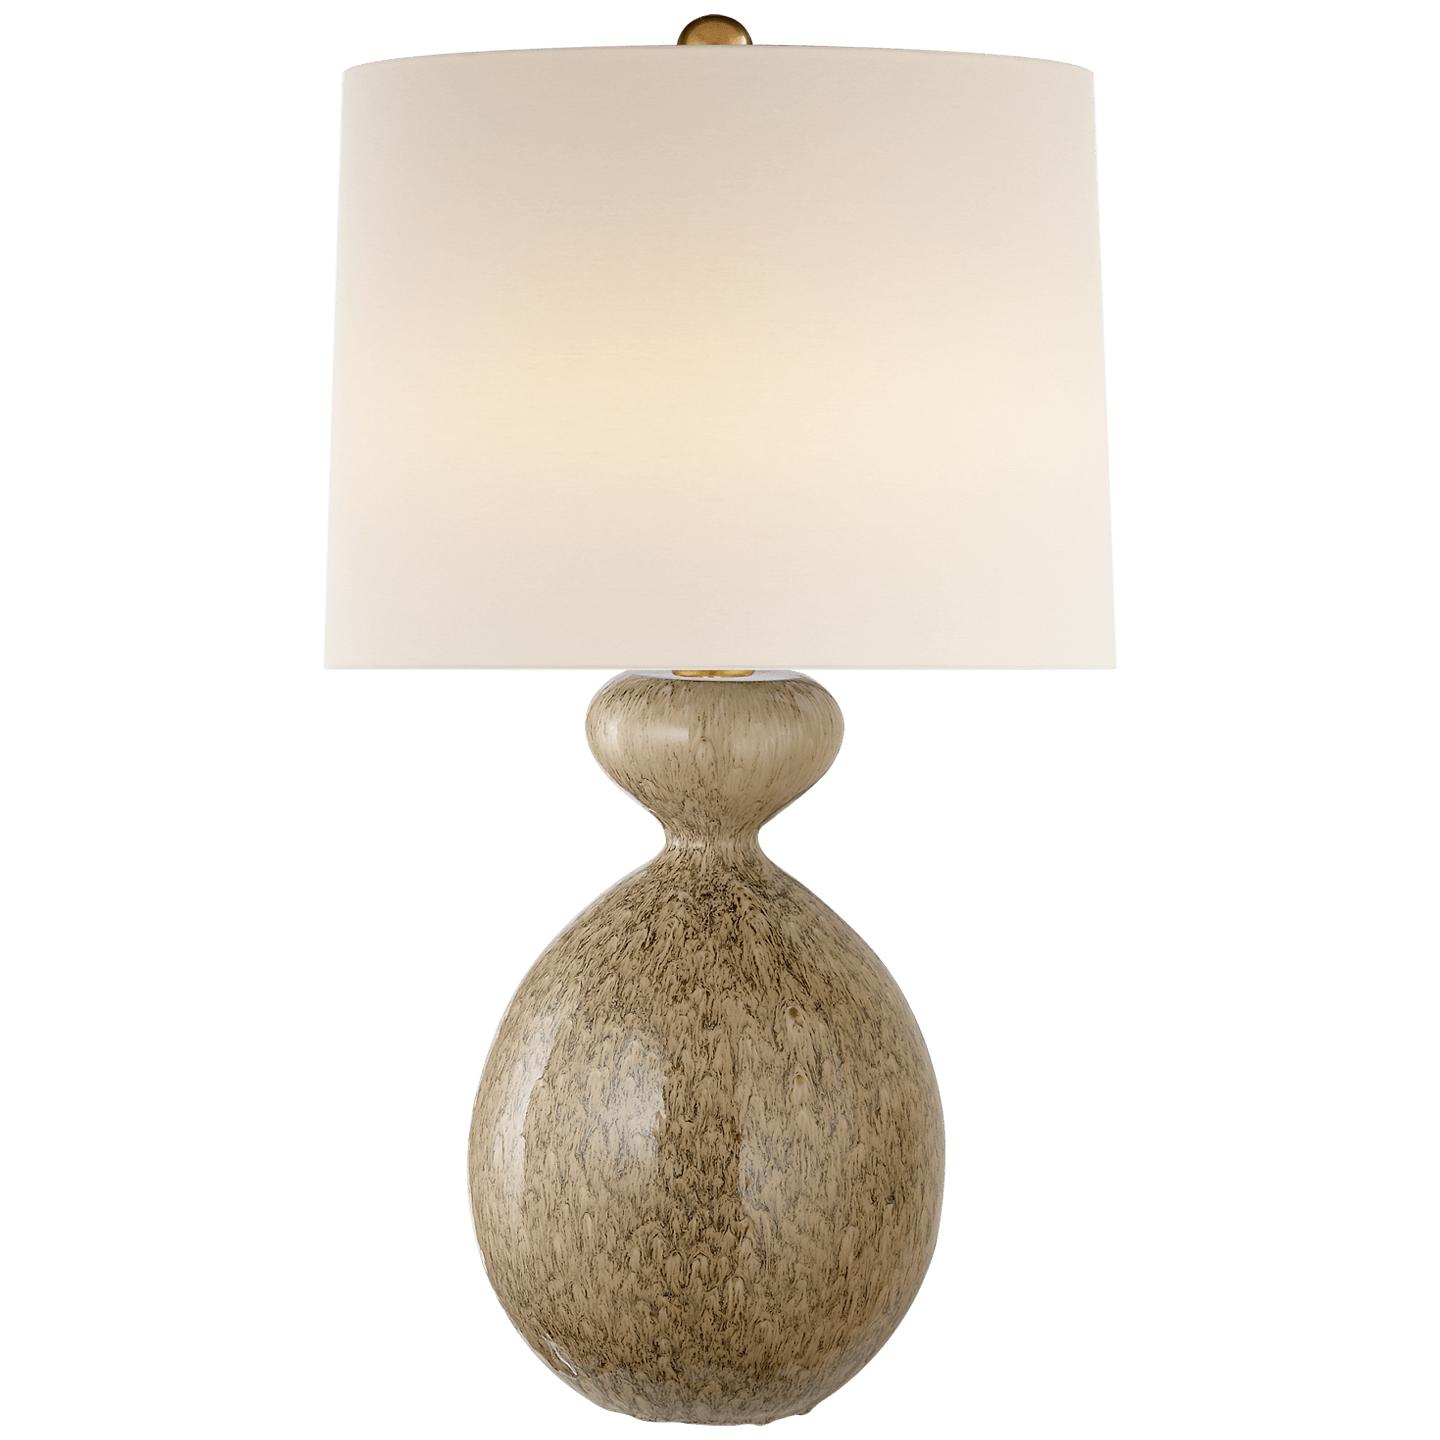 Купить Настольная лампа Gannet Table Lamp в интернет-магазине roooms.ru